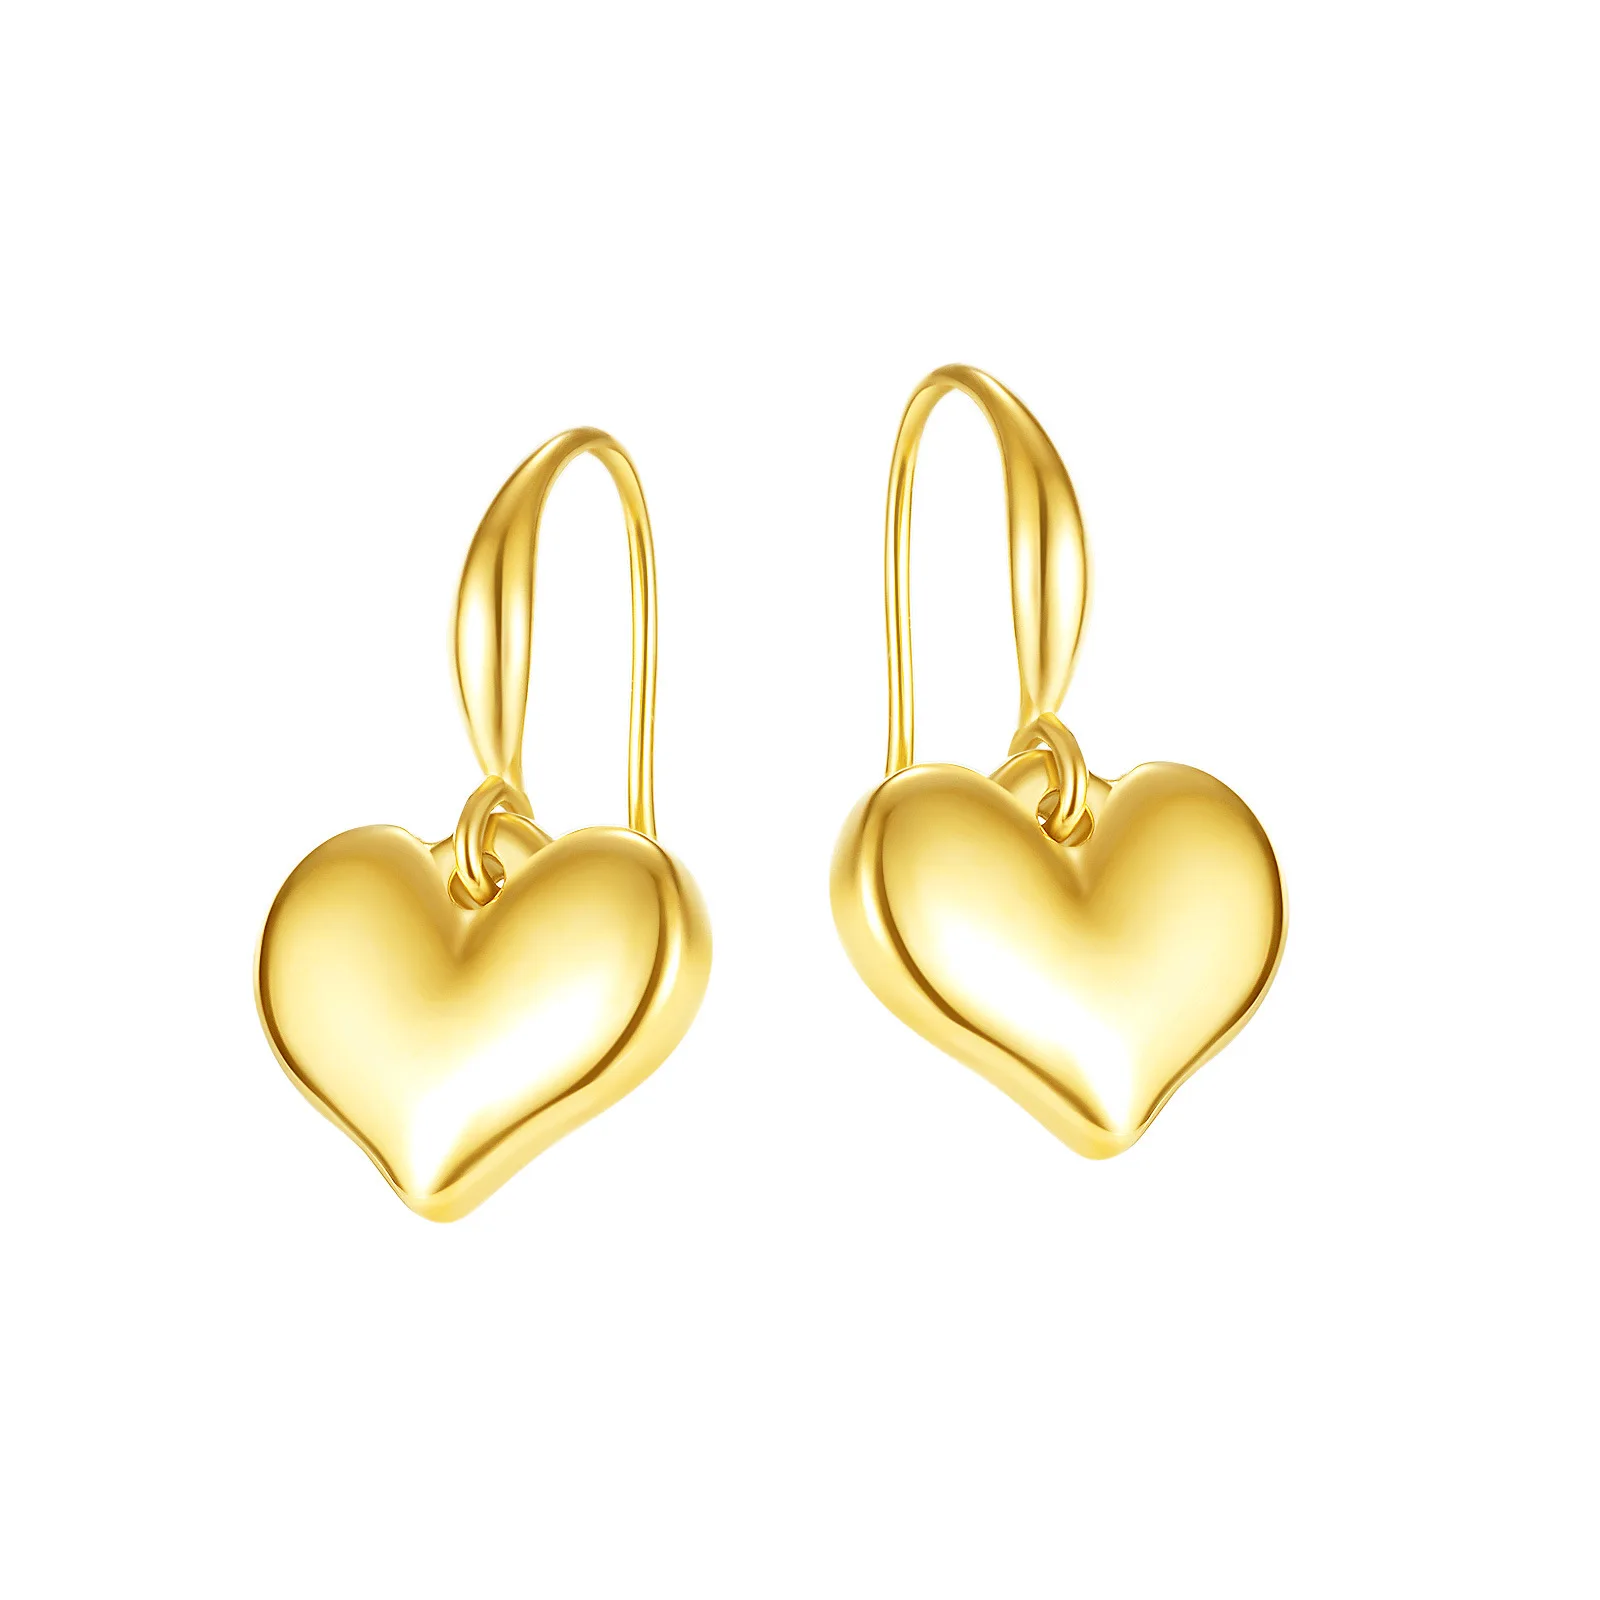 Buy Gold Heart Earrings Online  Heart Shape Earrings Designs  KuberBoxcom